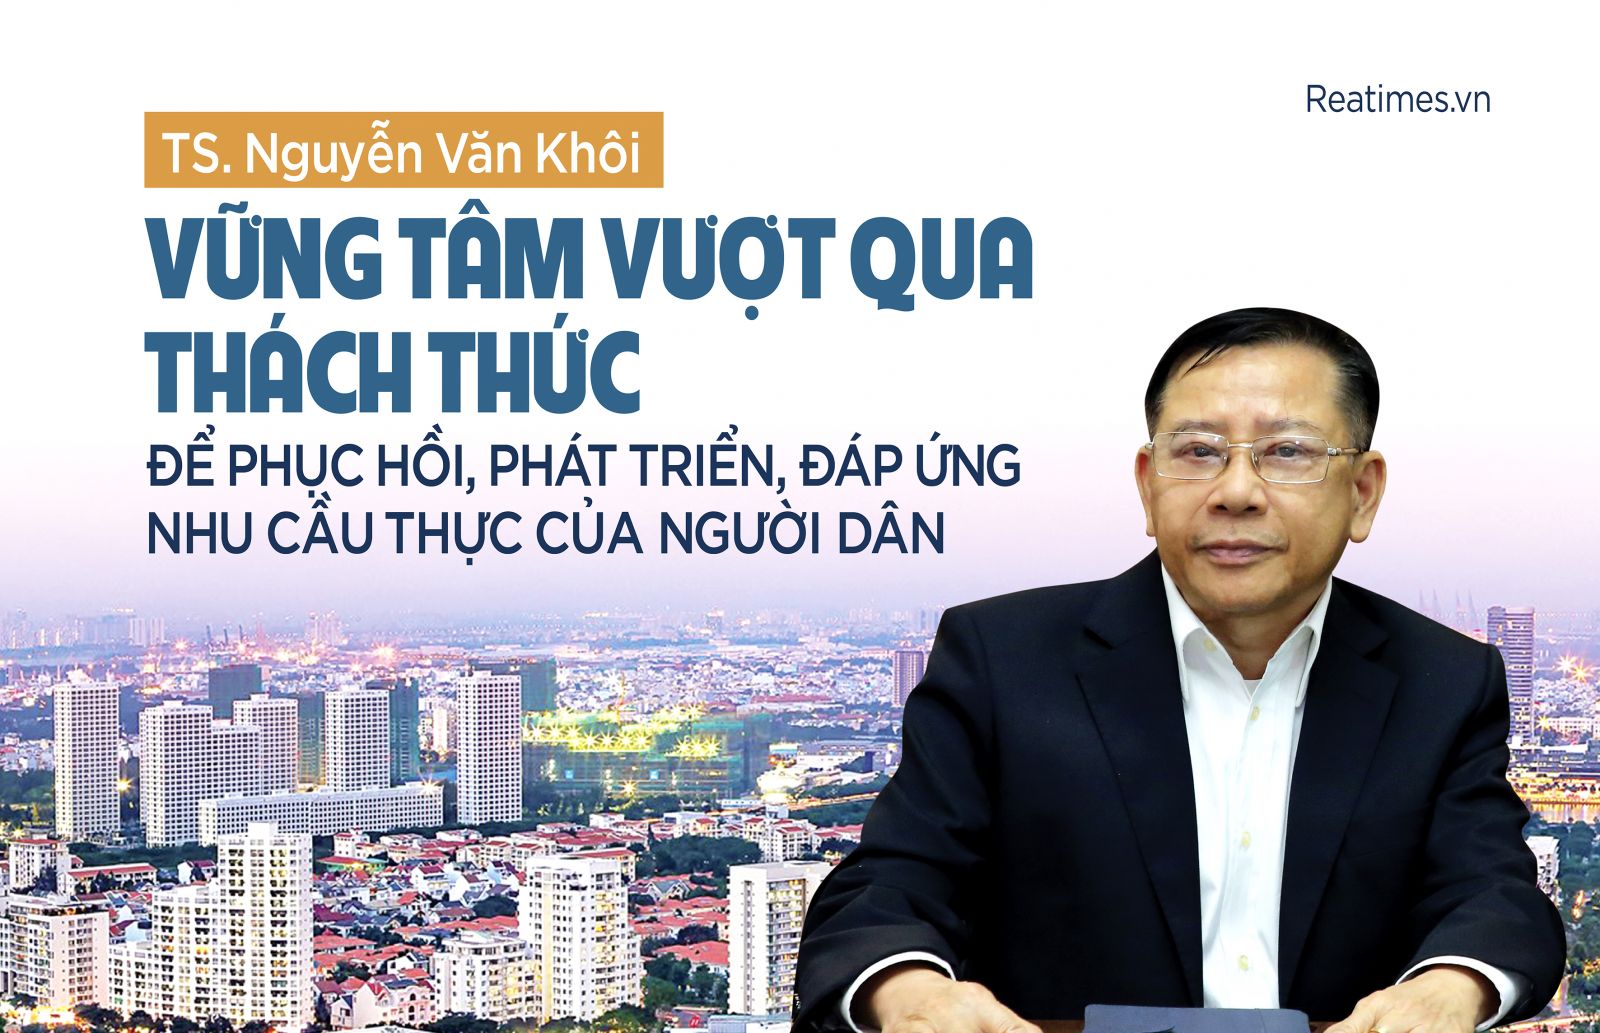 TS. Nguyễn Văn Khôi: Vững tâm vượt qua thách thức